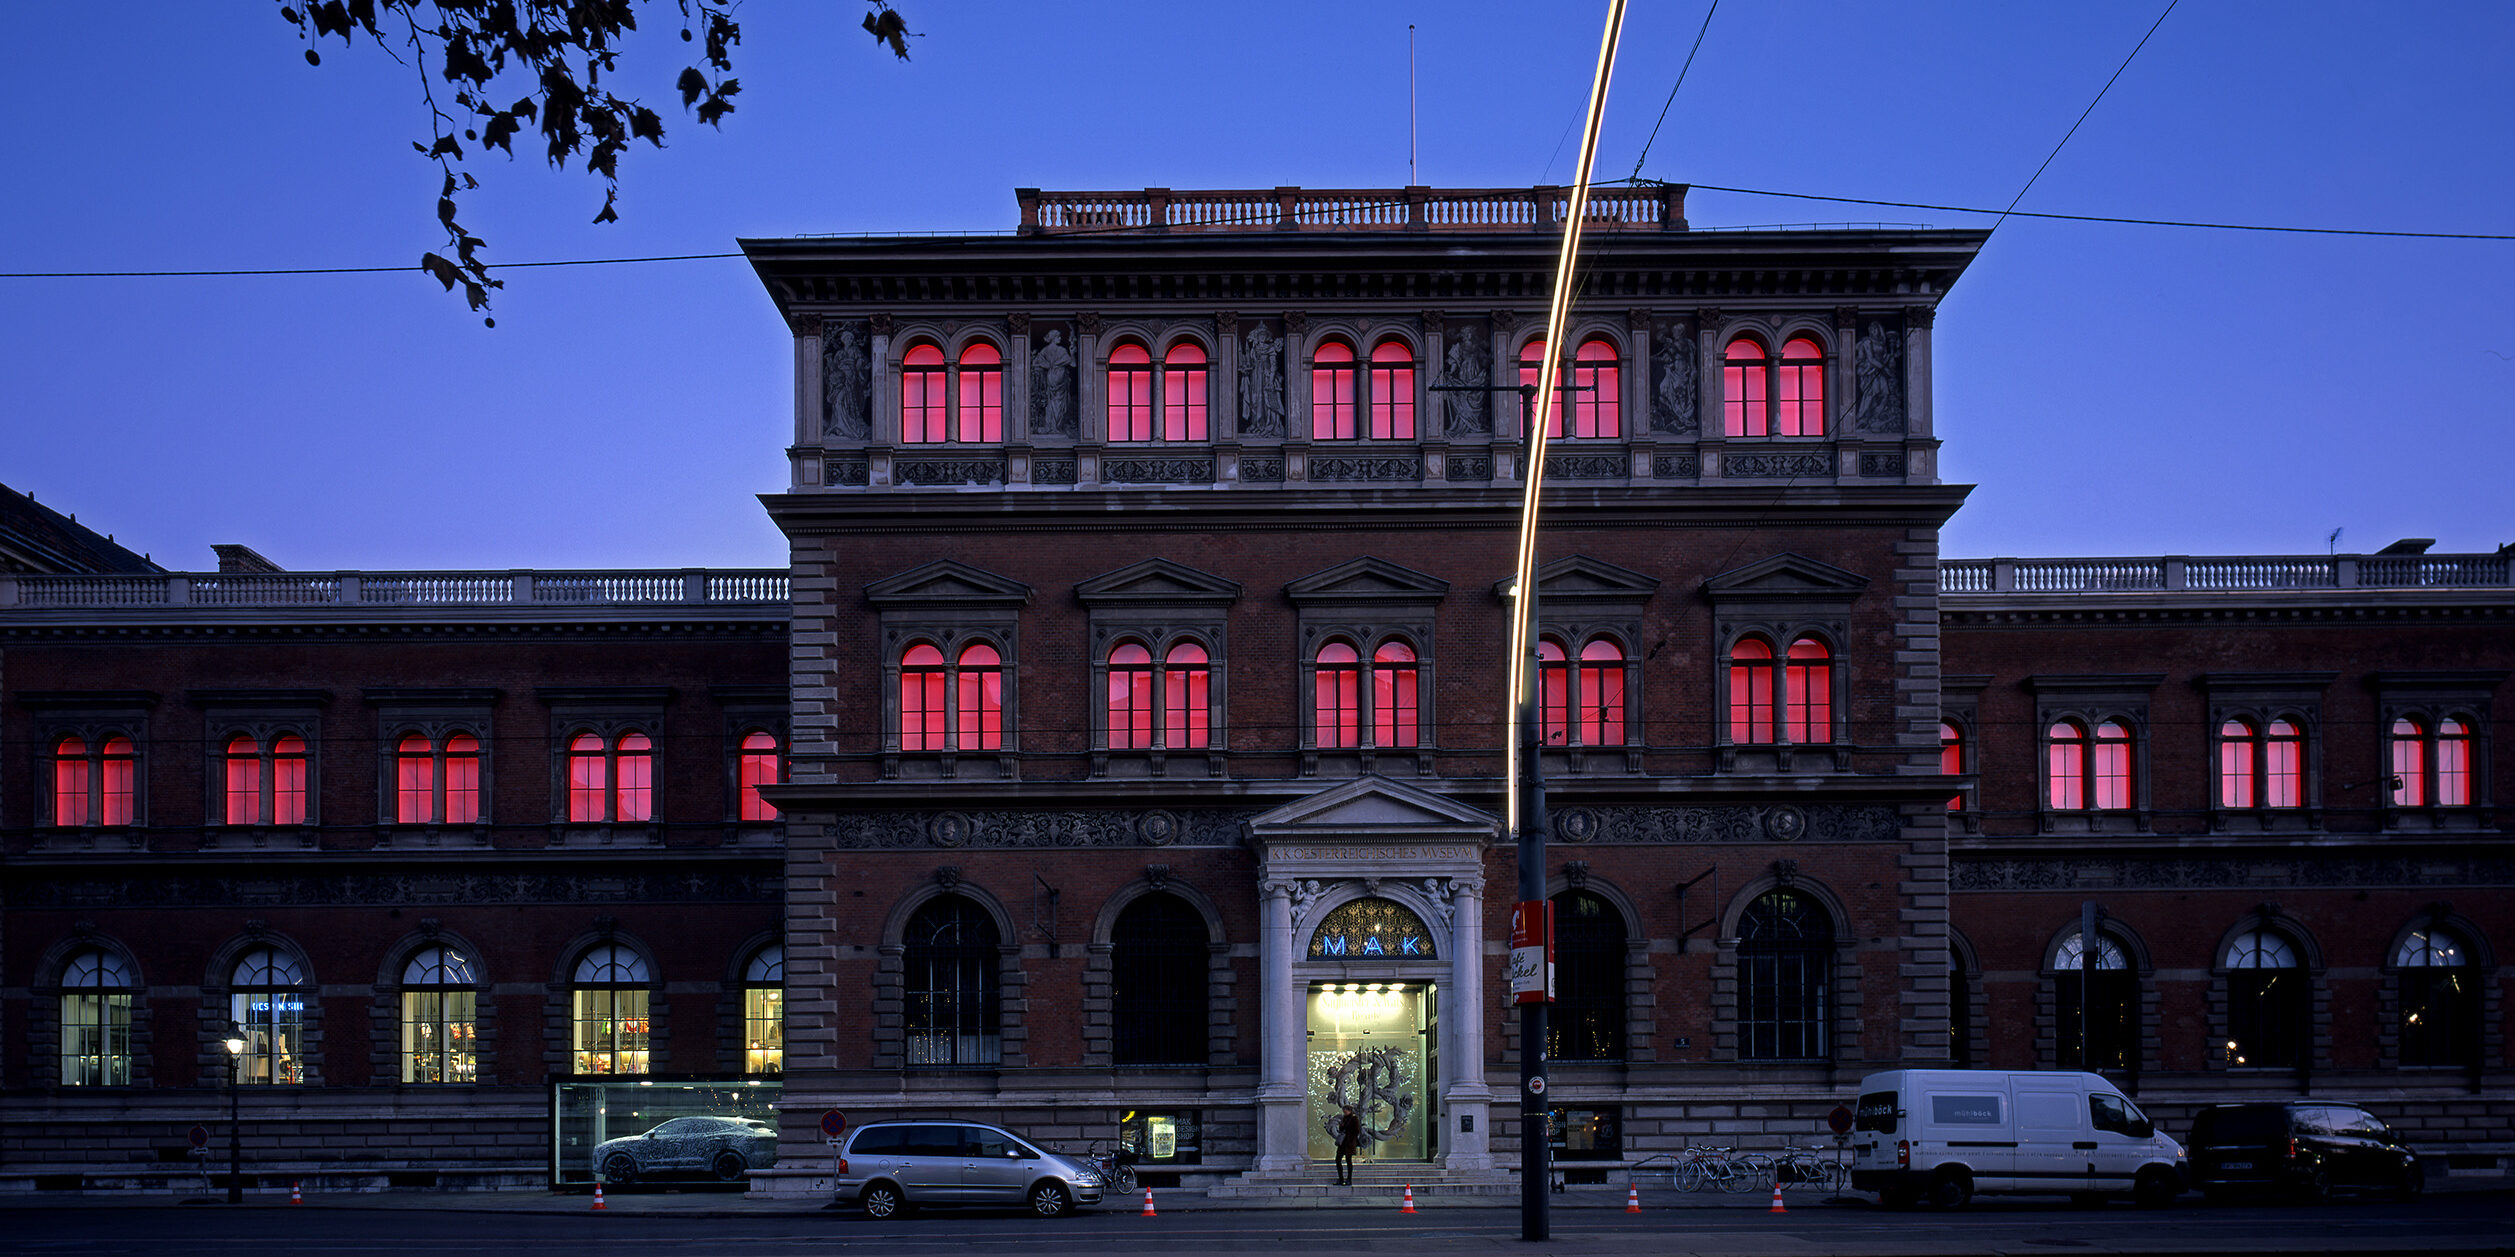 Die Fenster des Museums für angewandte Kunst leuchten in Rot im Rahmen der Installation MAKlite des Künstlers James Turrell.